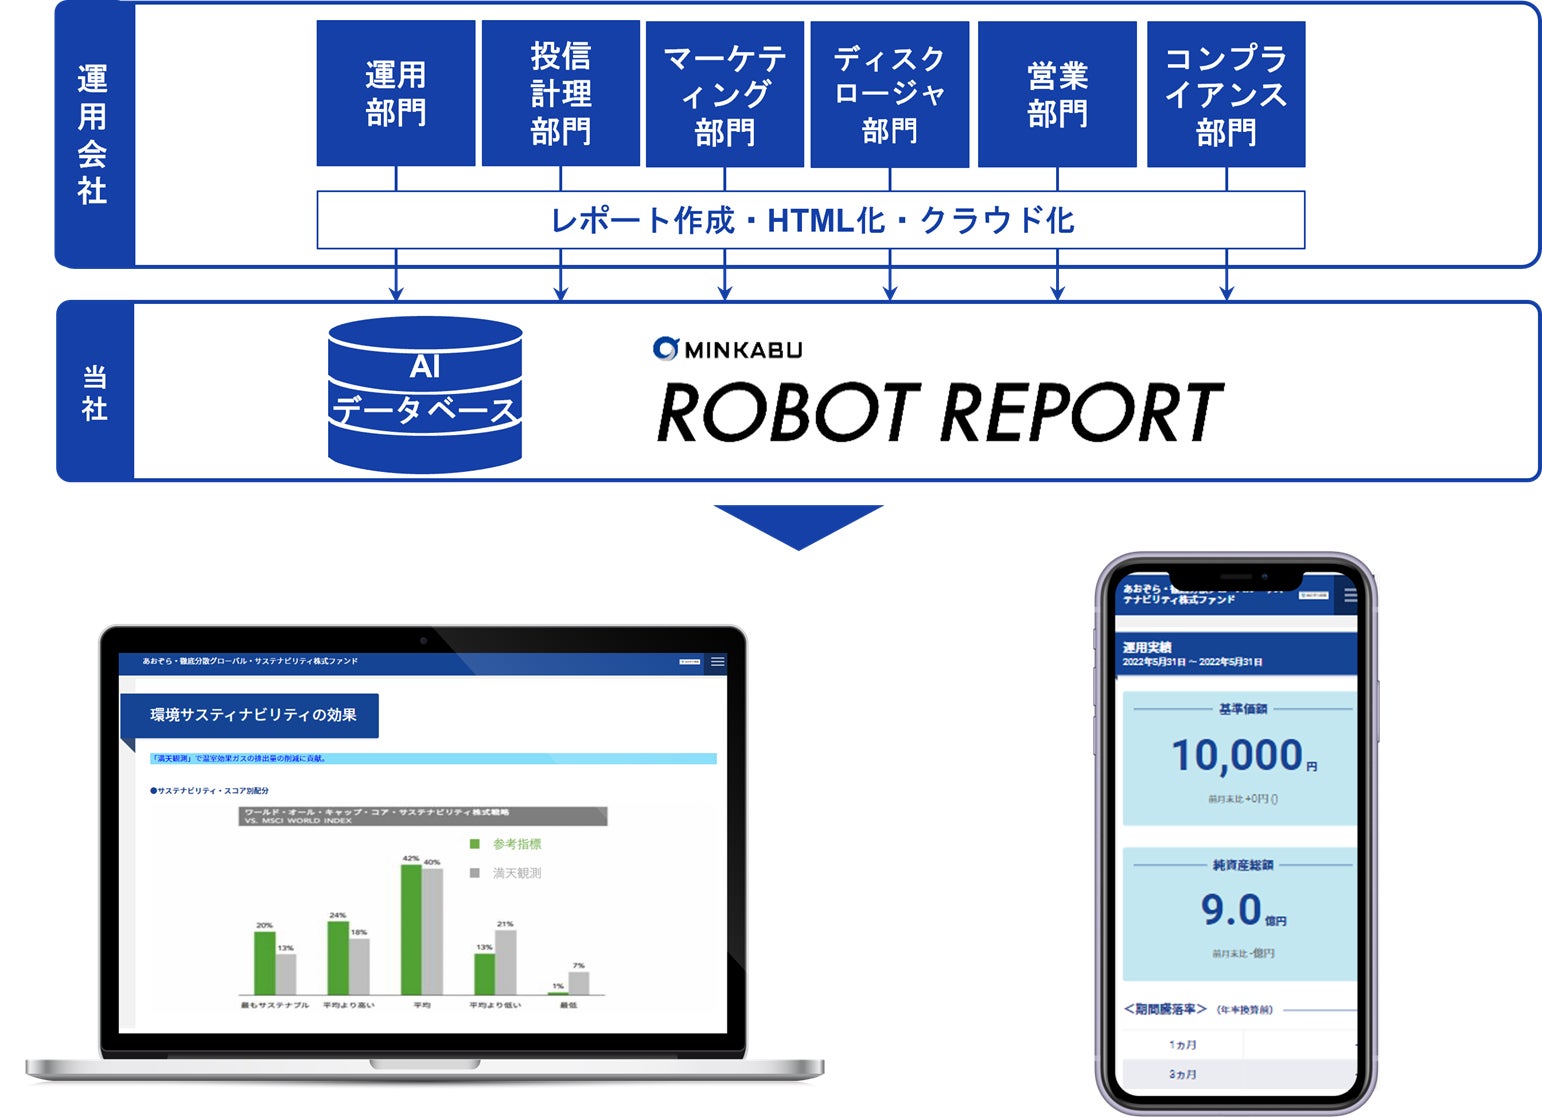 あおぞら投信へ「MINKABU ROBOT REPORT」の提供開始